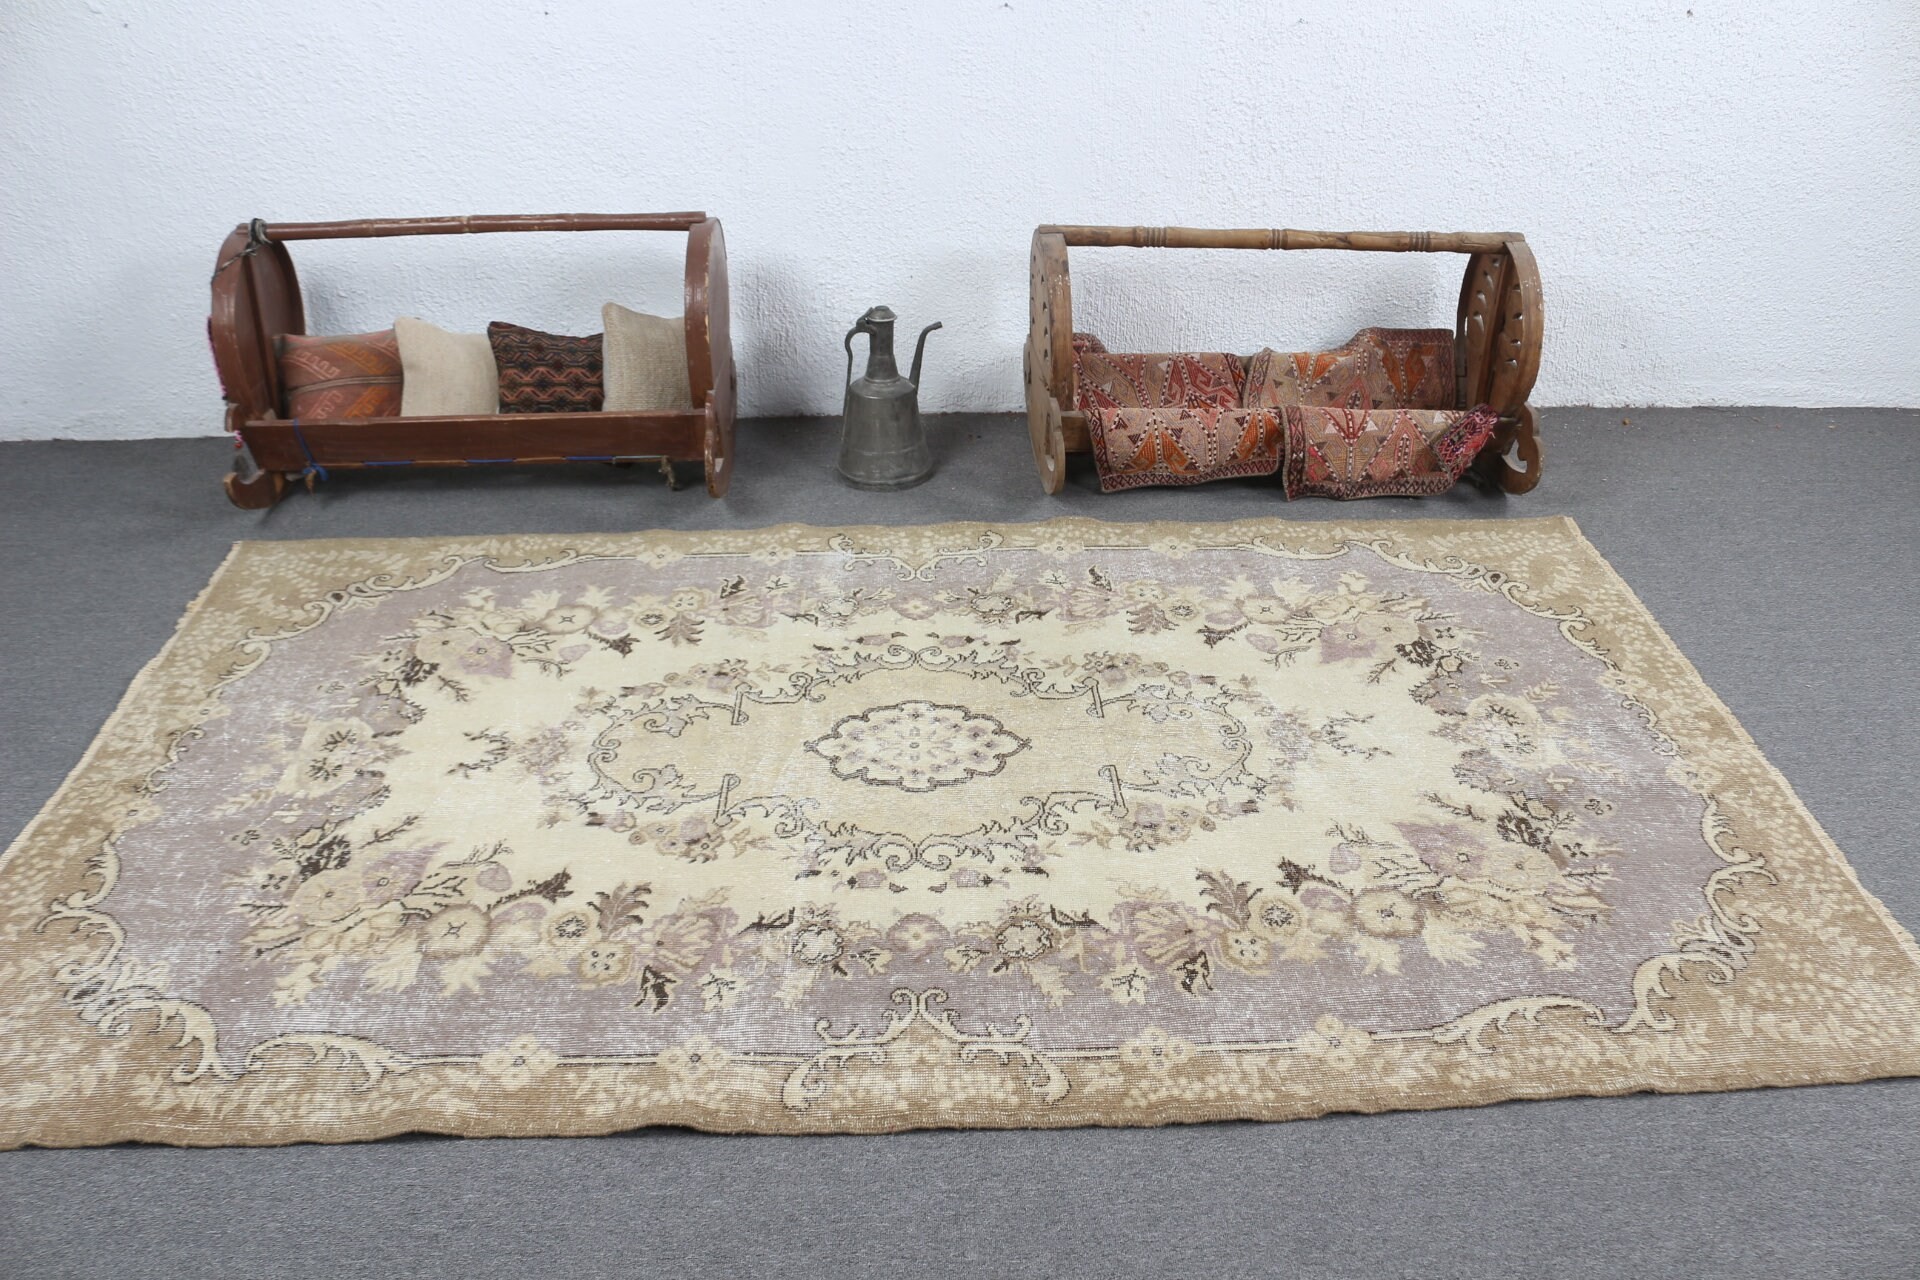 Brown Moroccan Rug, Anatolian Rugs, Vintage Rugs, Living Room Rug, Turkish Rug, Bedroom Rug, Rugs for Bedroom, 5.1x8.5 ft Large Rugs